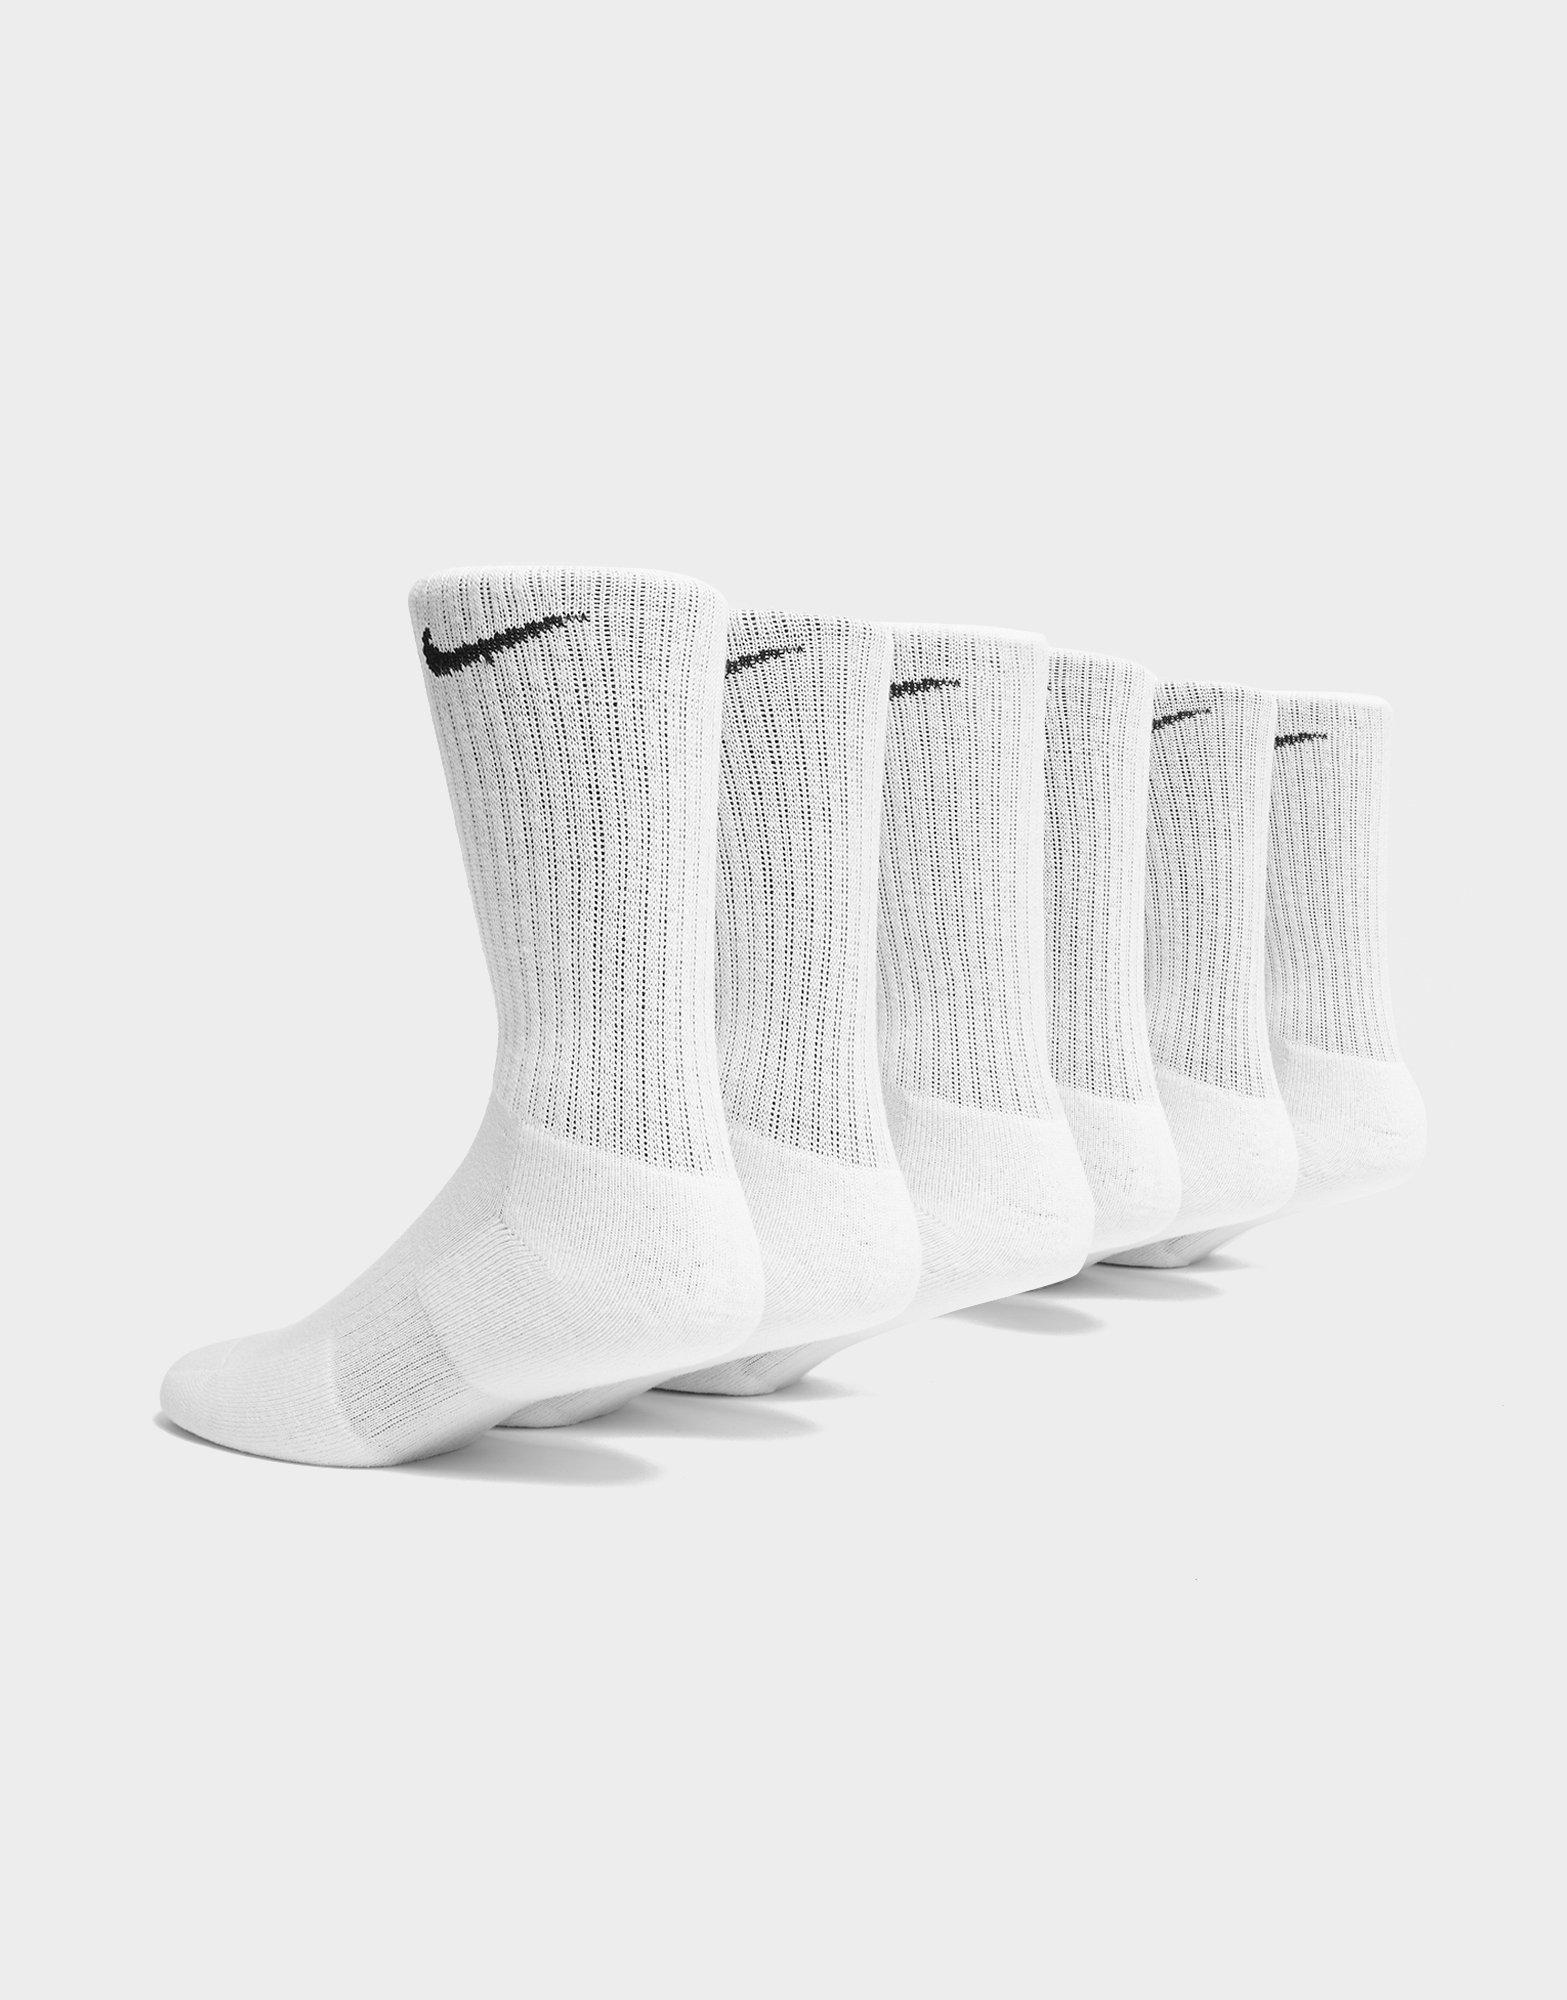 jd white nike socks